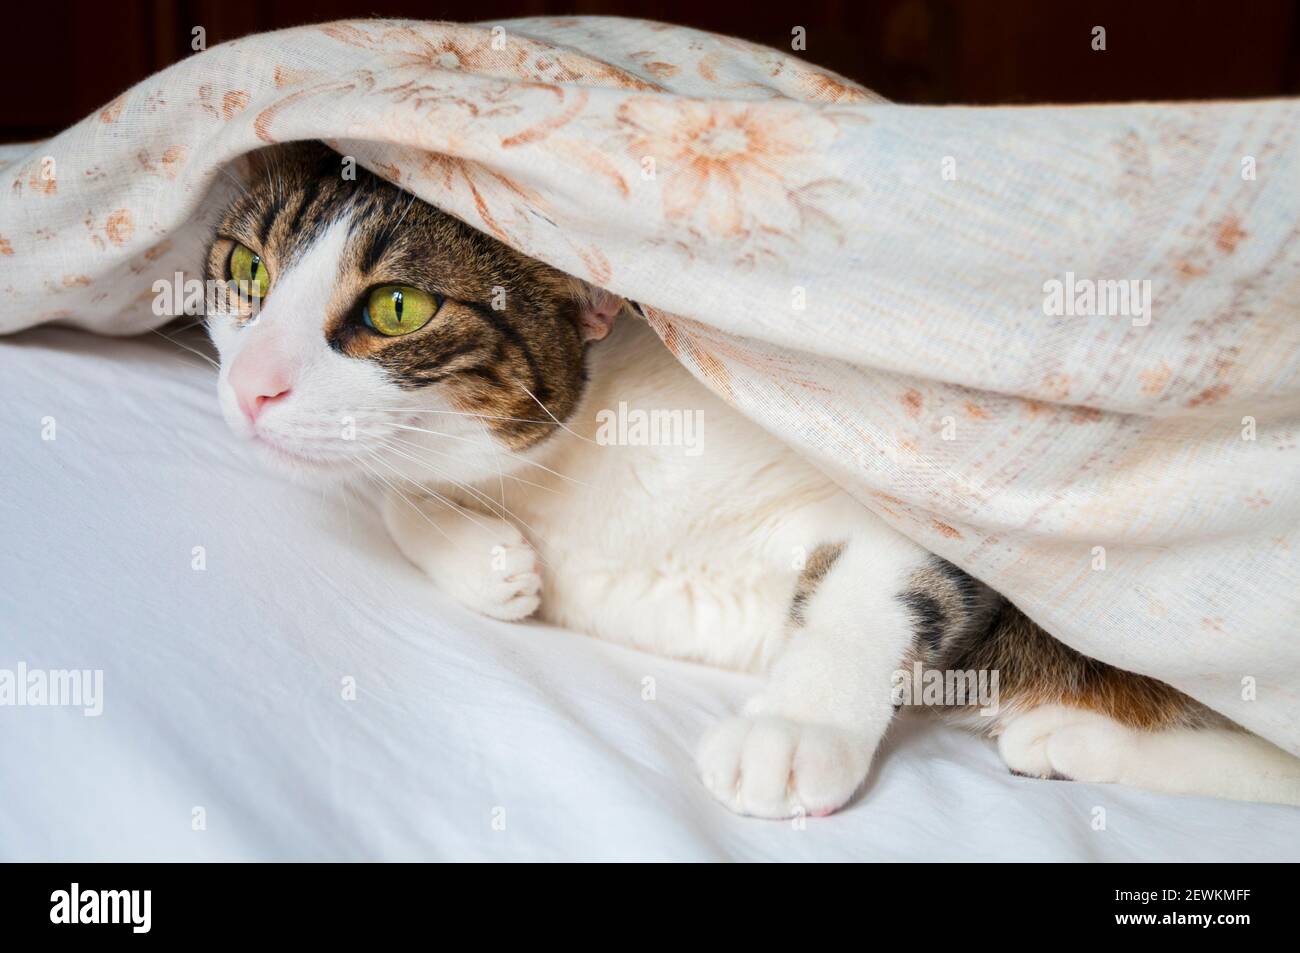 Tabby and white cat hidden under duvet. Stock Photo